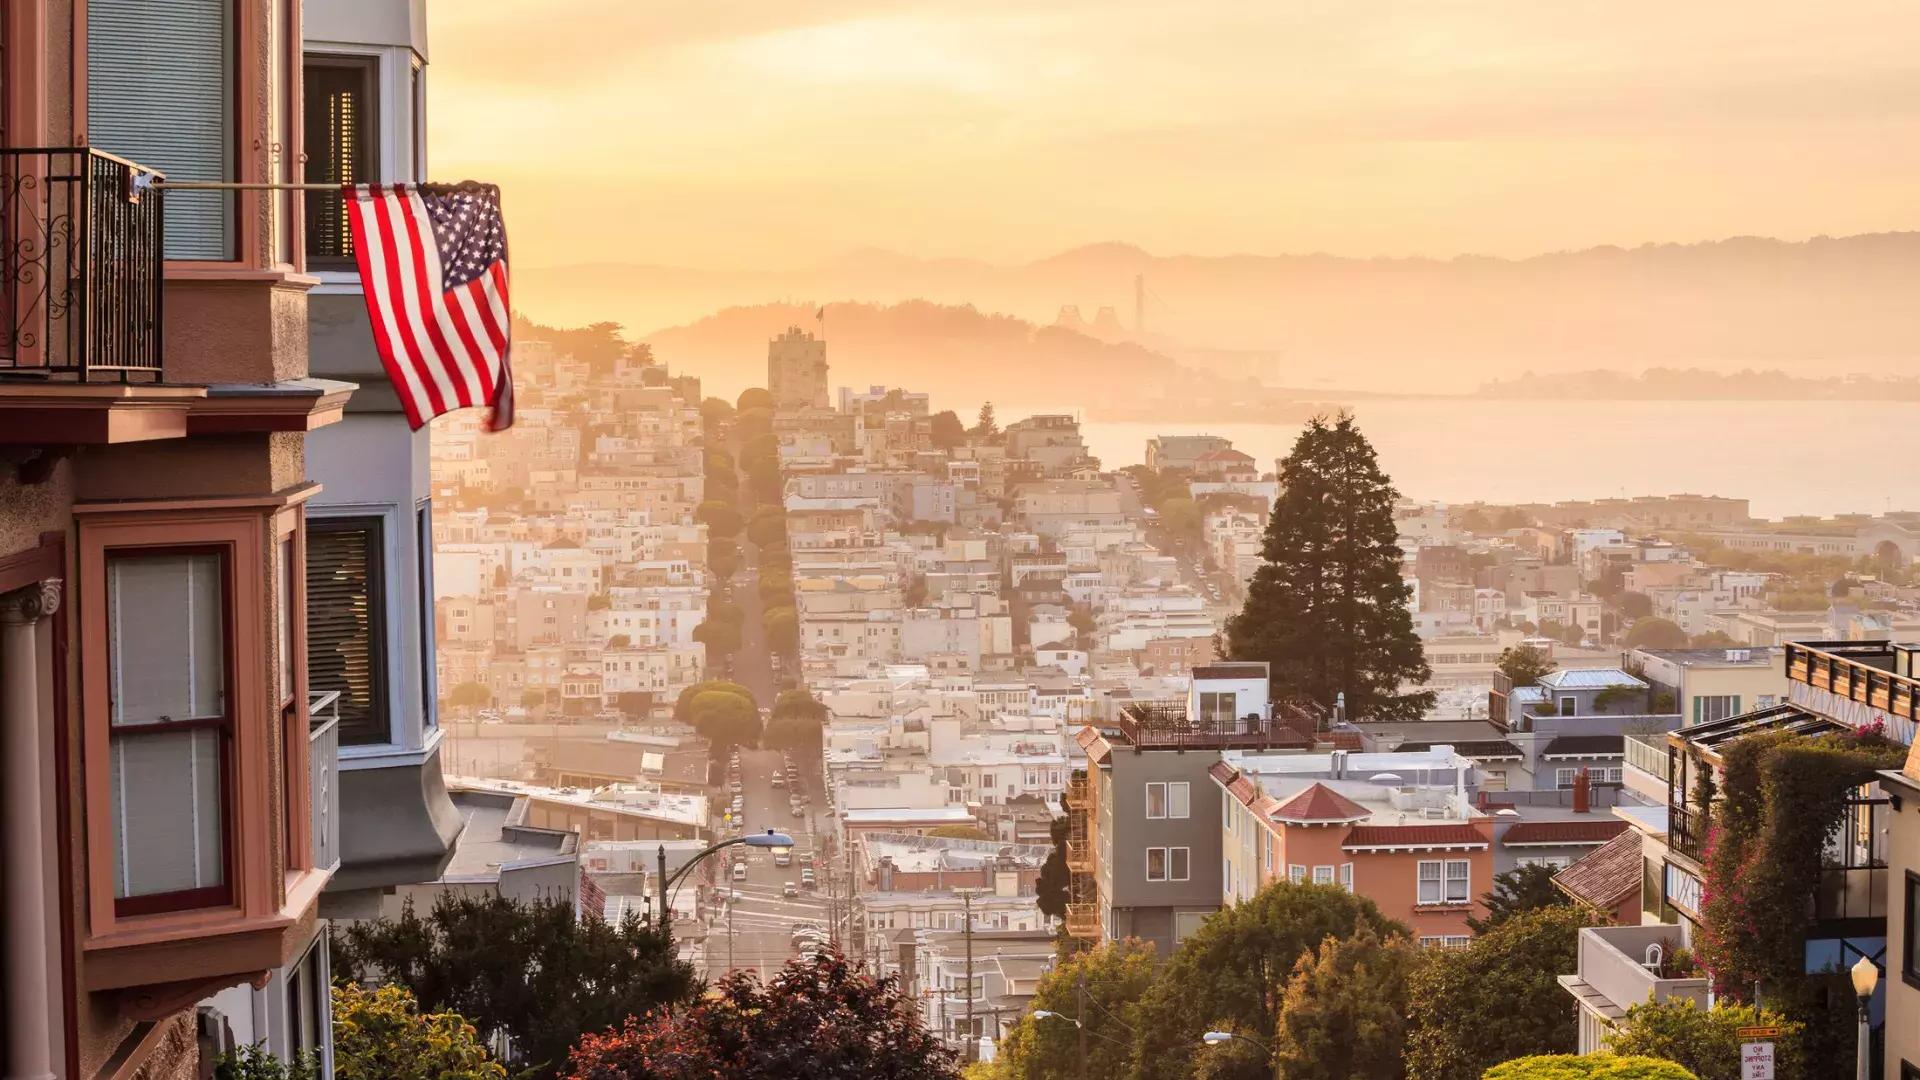 从山顶俯瞰贝博体彩app的景色, 前景是一面飘扬的美国国旗.